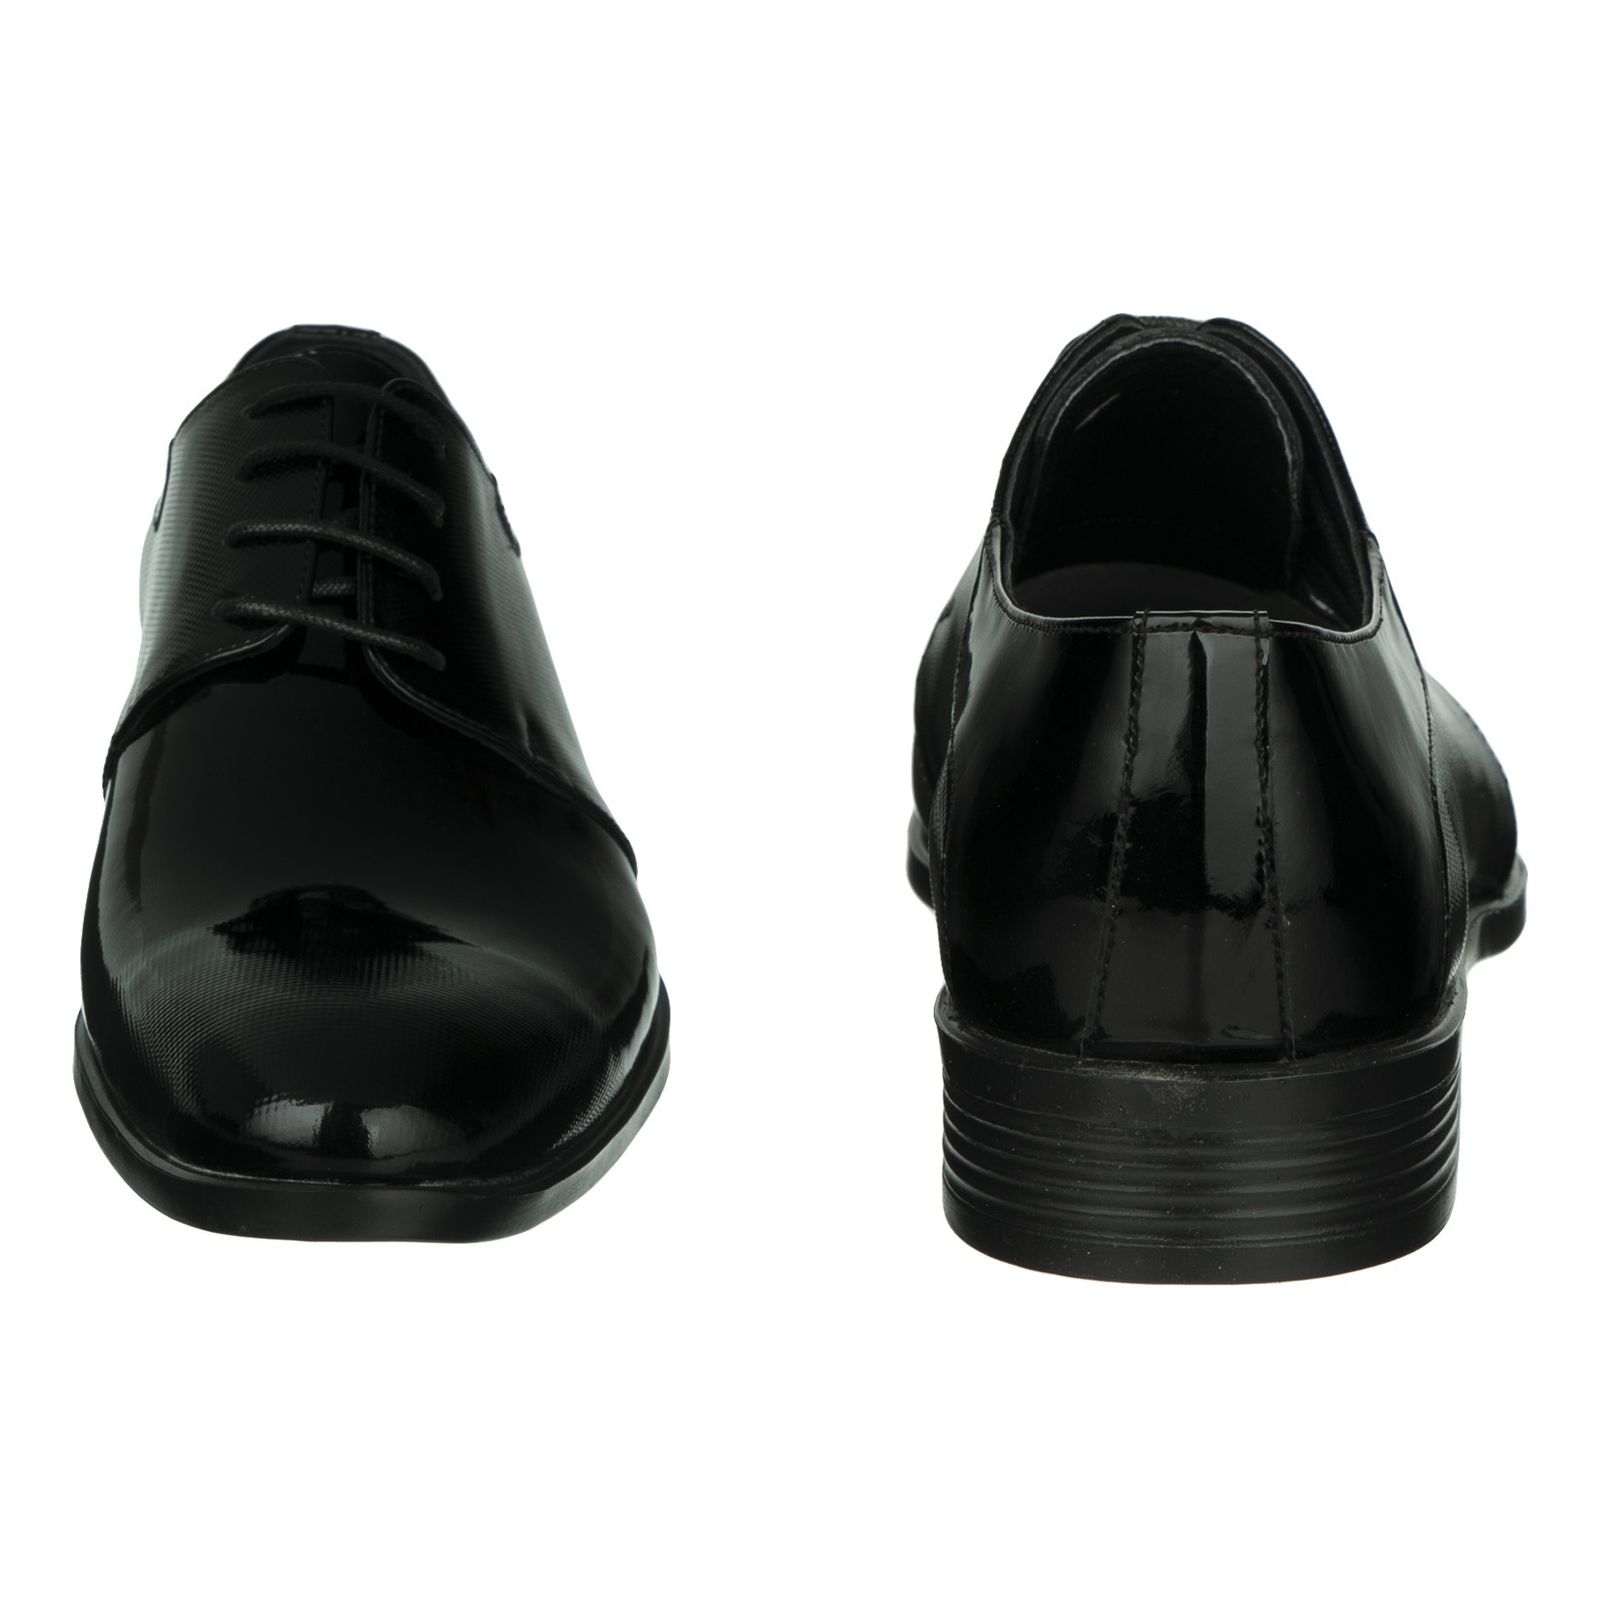 کفش مردانه گاندو مدل 506-99 - مشکی - 4